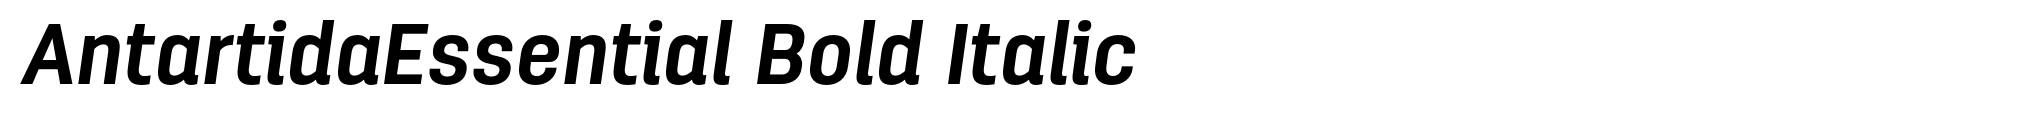 AntartidaEssential Bold Italic image